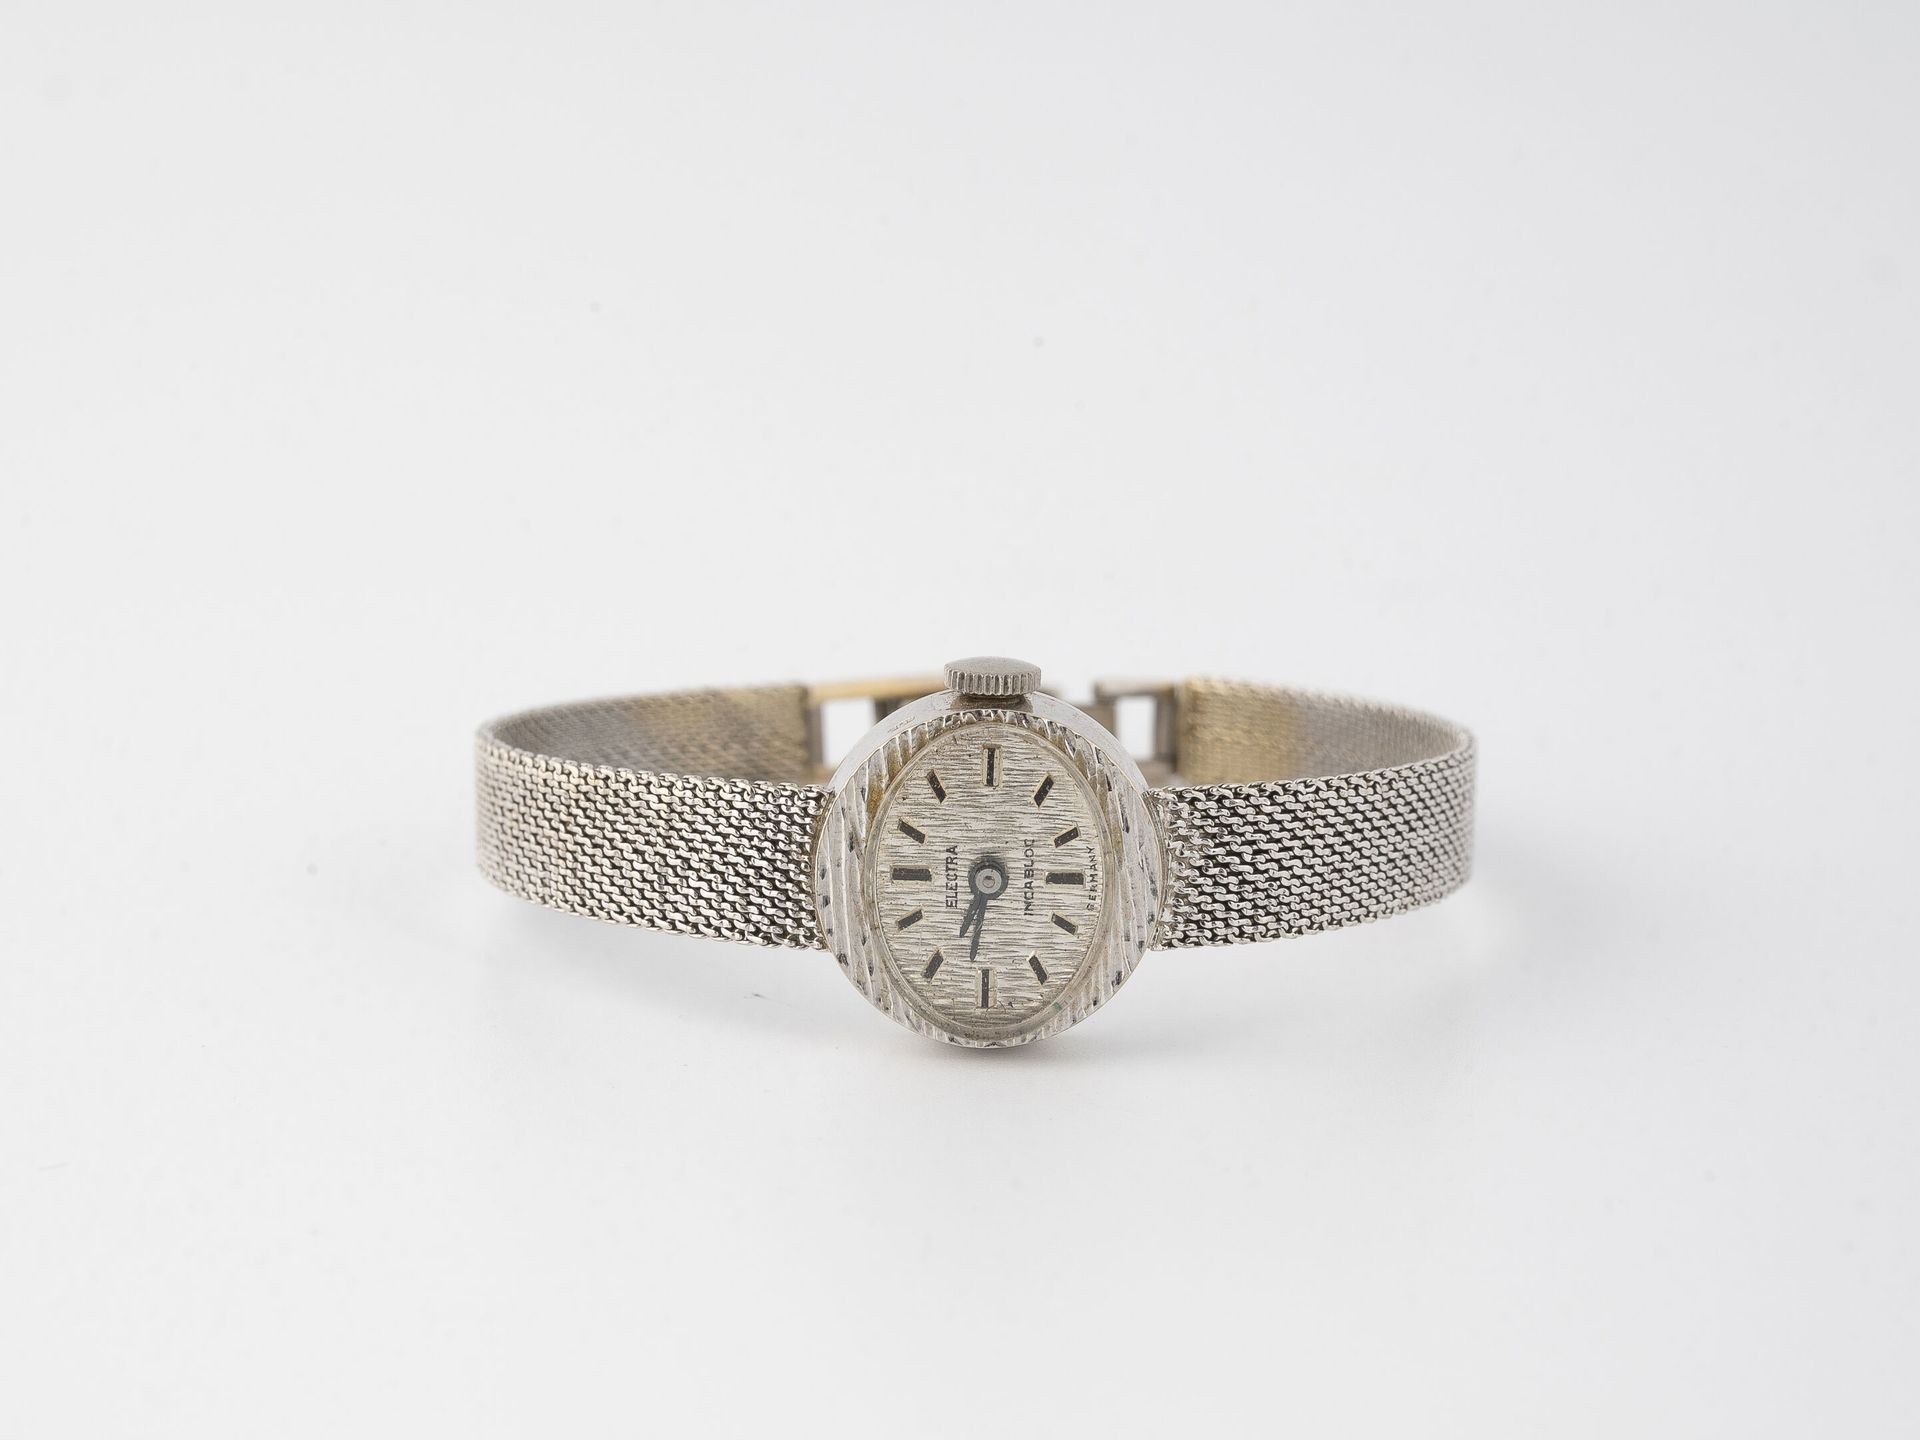 ELECTRA Piccolo orologio da polso da donna in oro bianco (750).

Cassa ovale.

Q&hellip;